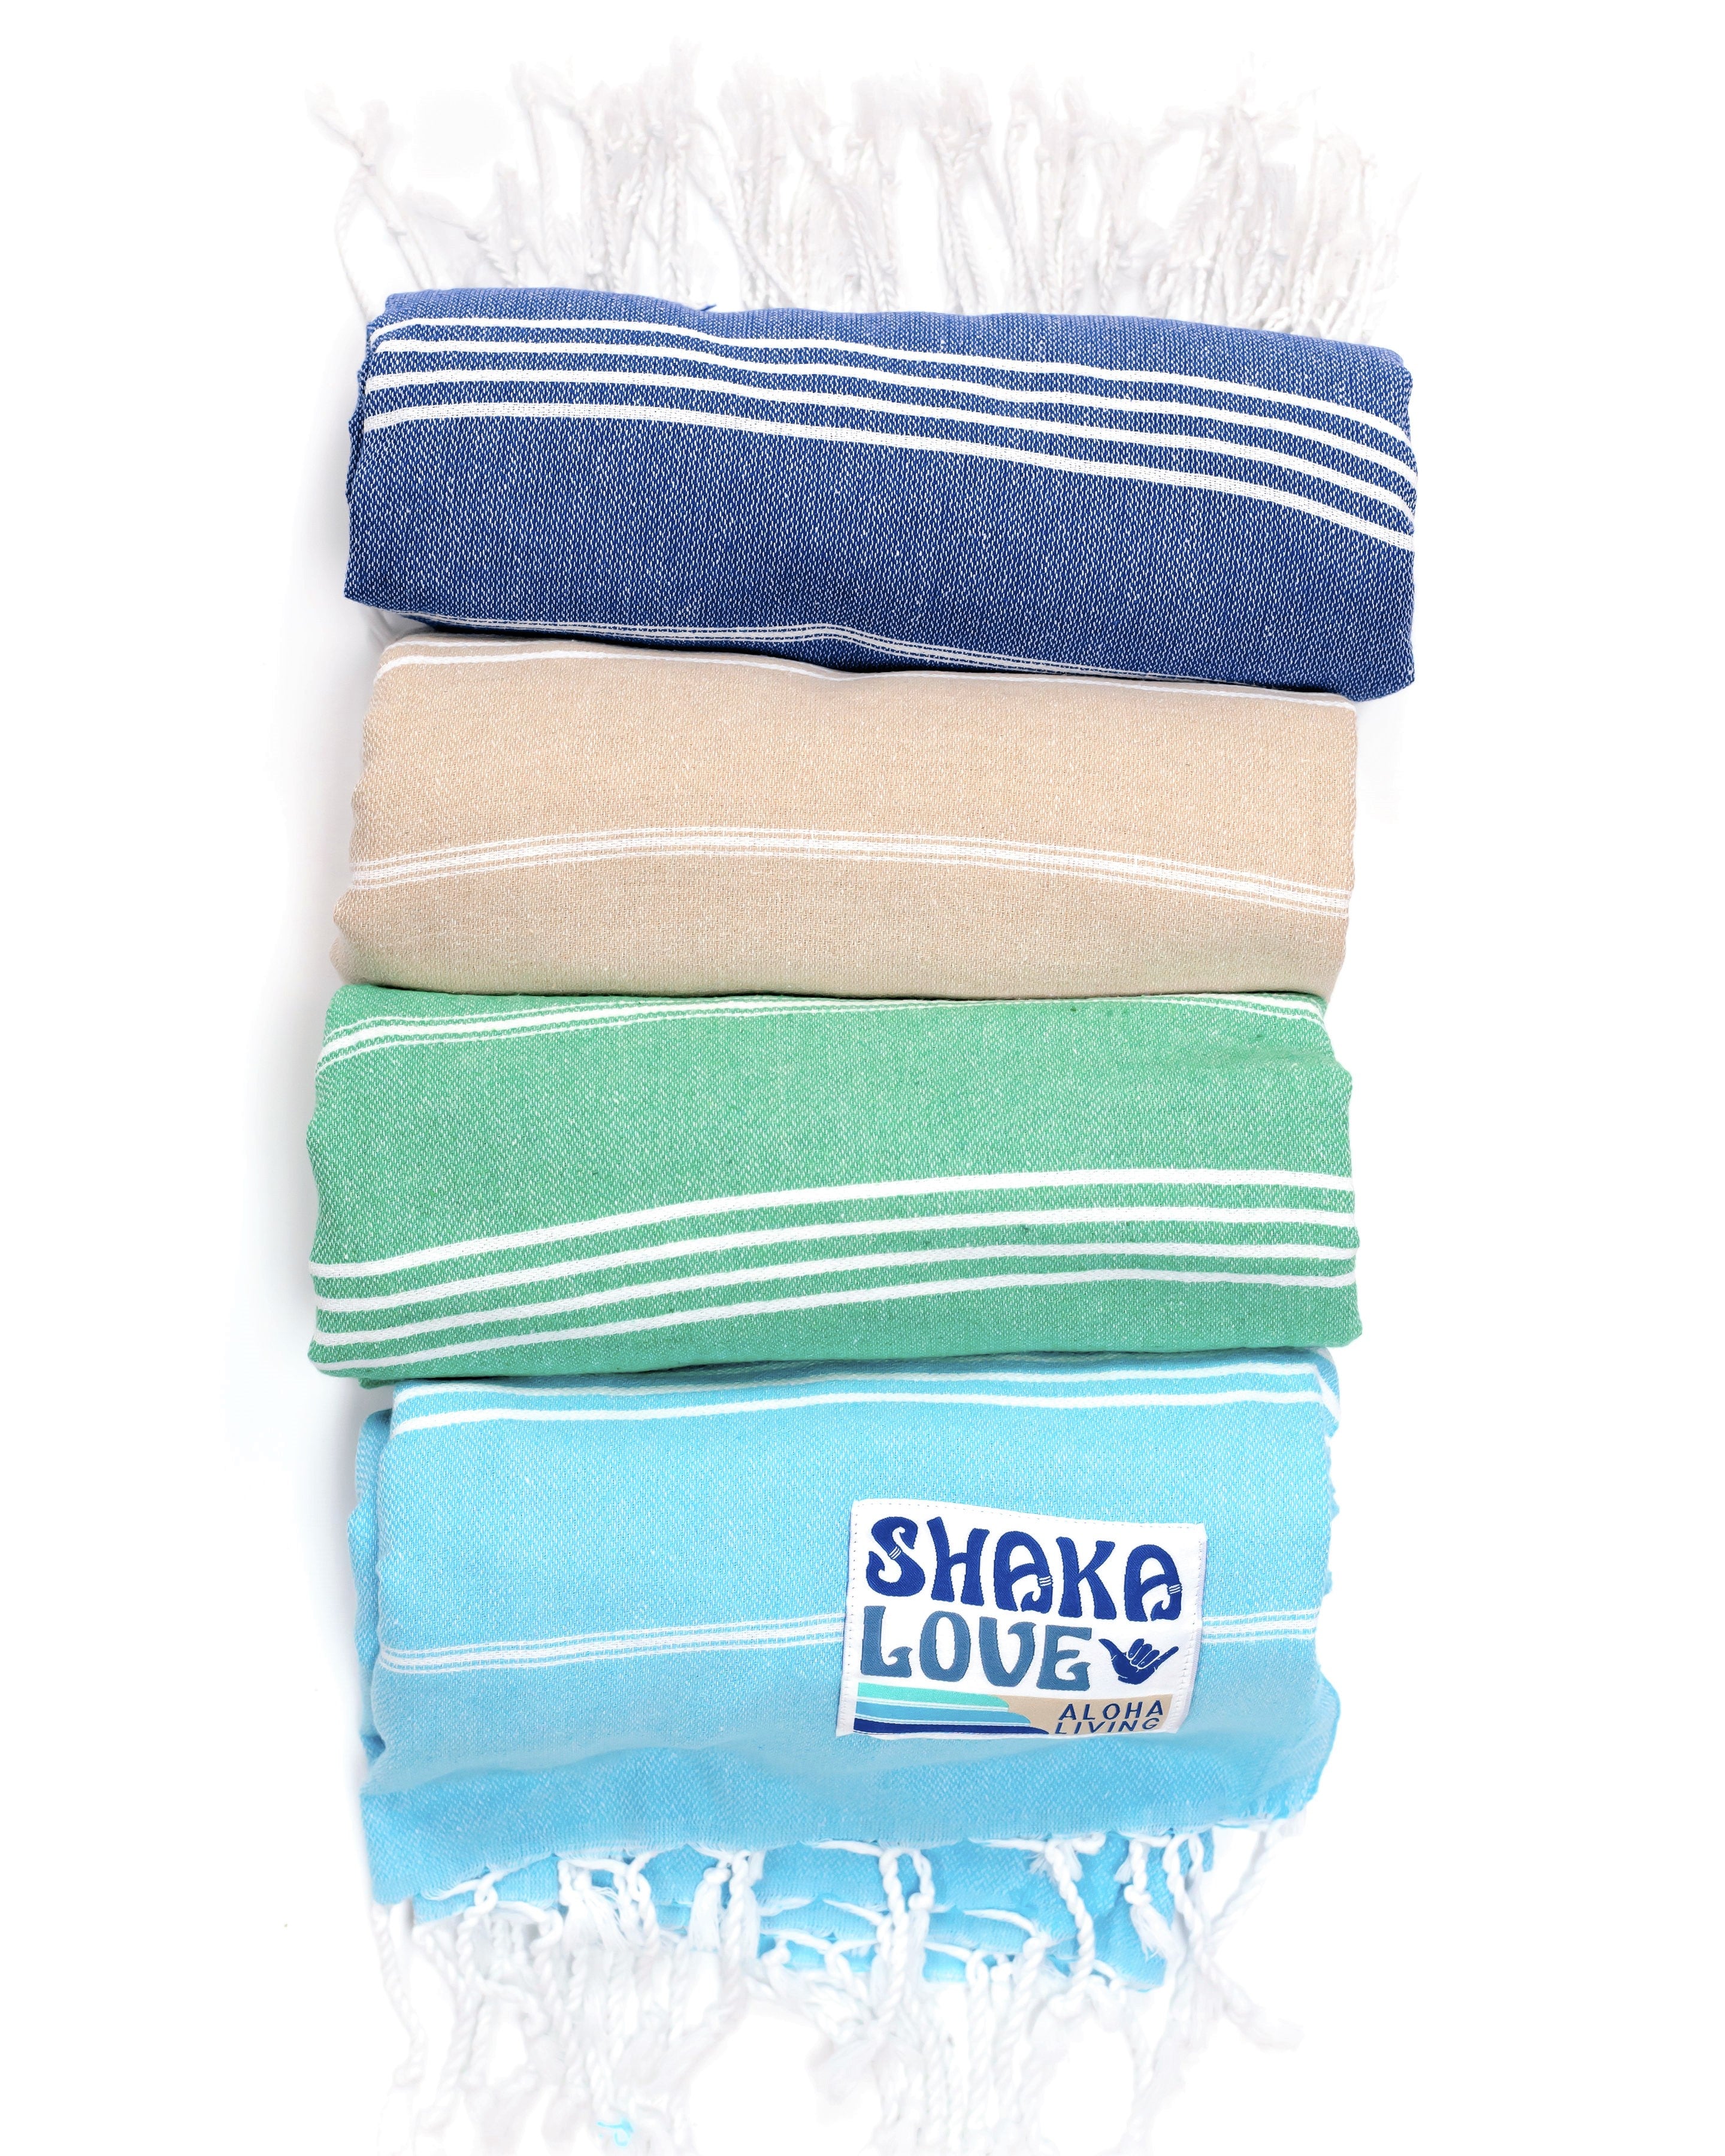 Bundle #4: Includes FOUR Shaka Beach Towels